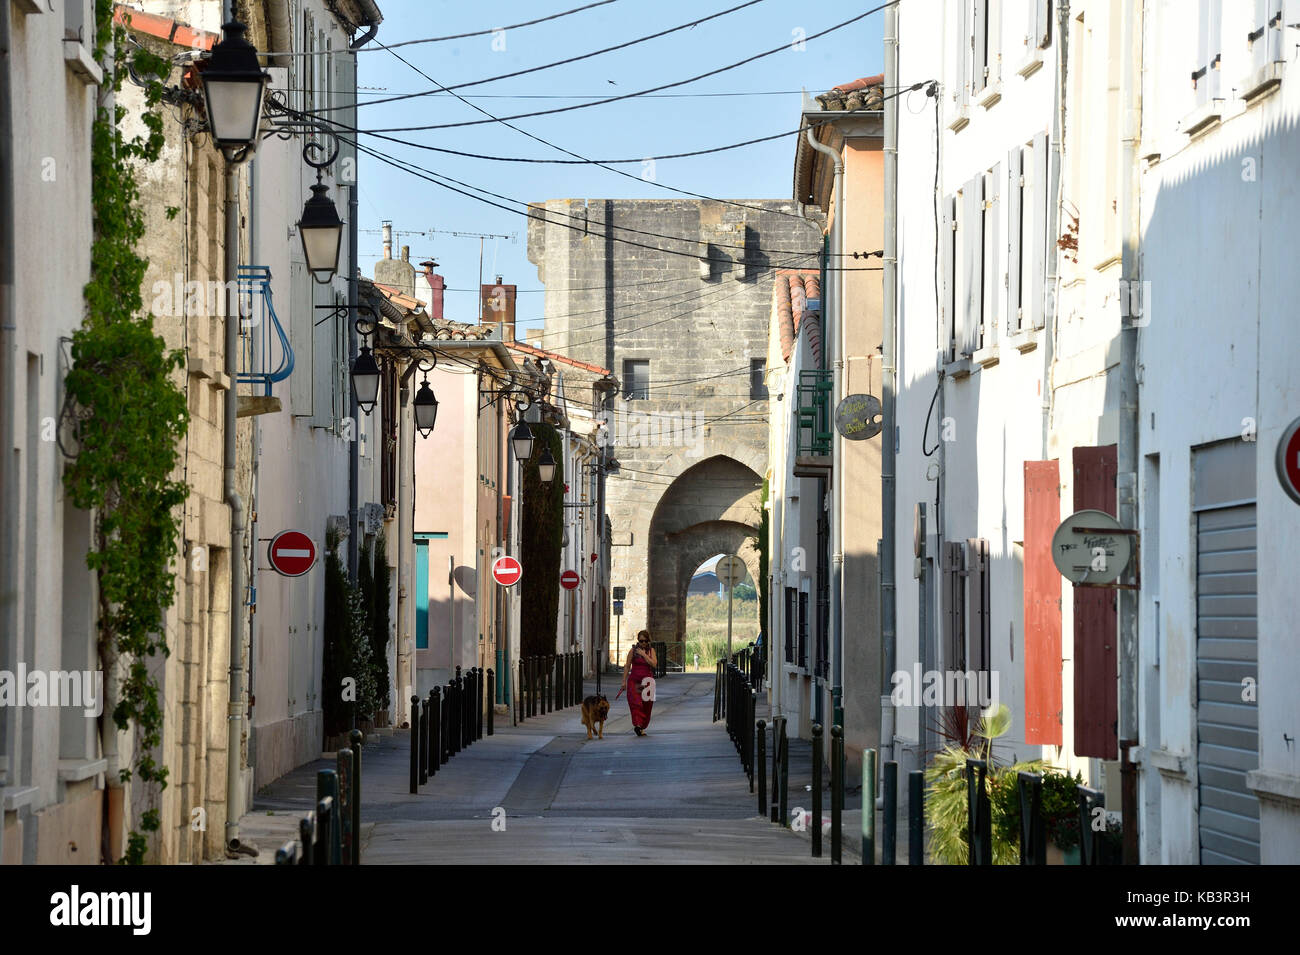 La France, gard, Aigues-mortes, cité médiévale, remparts et fortifications encerclent la ville, porte fortifiée Banque D'Images